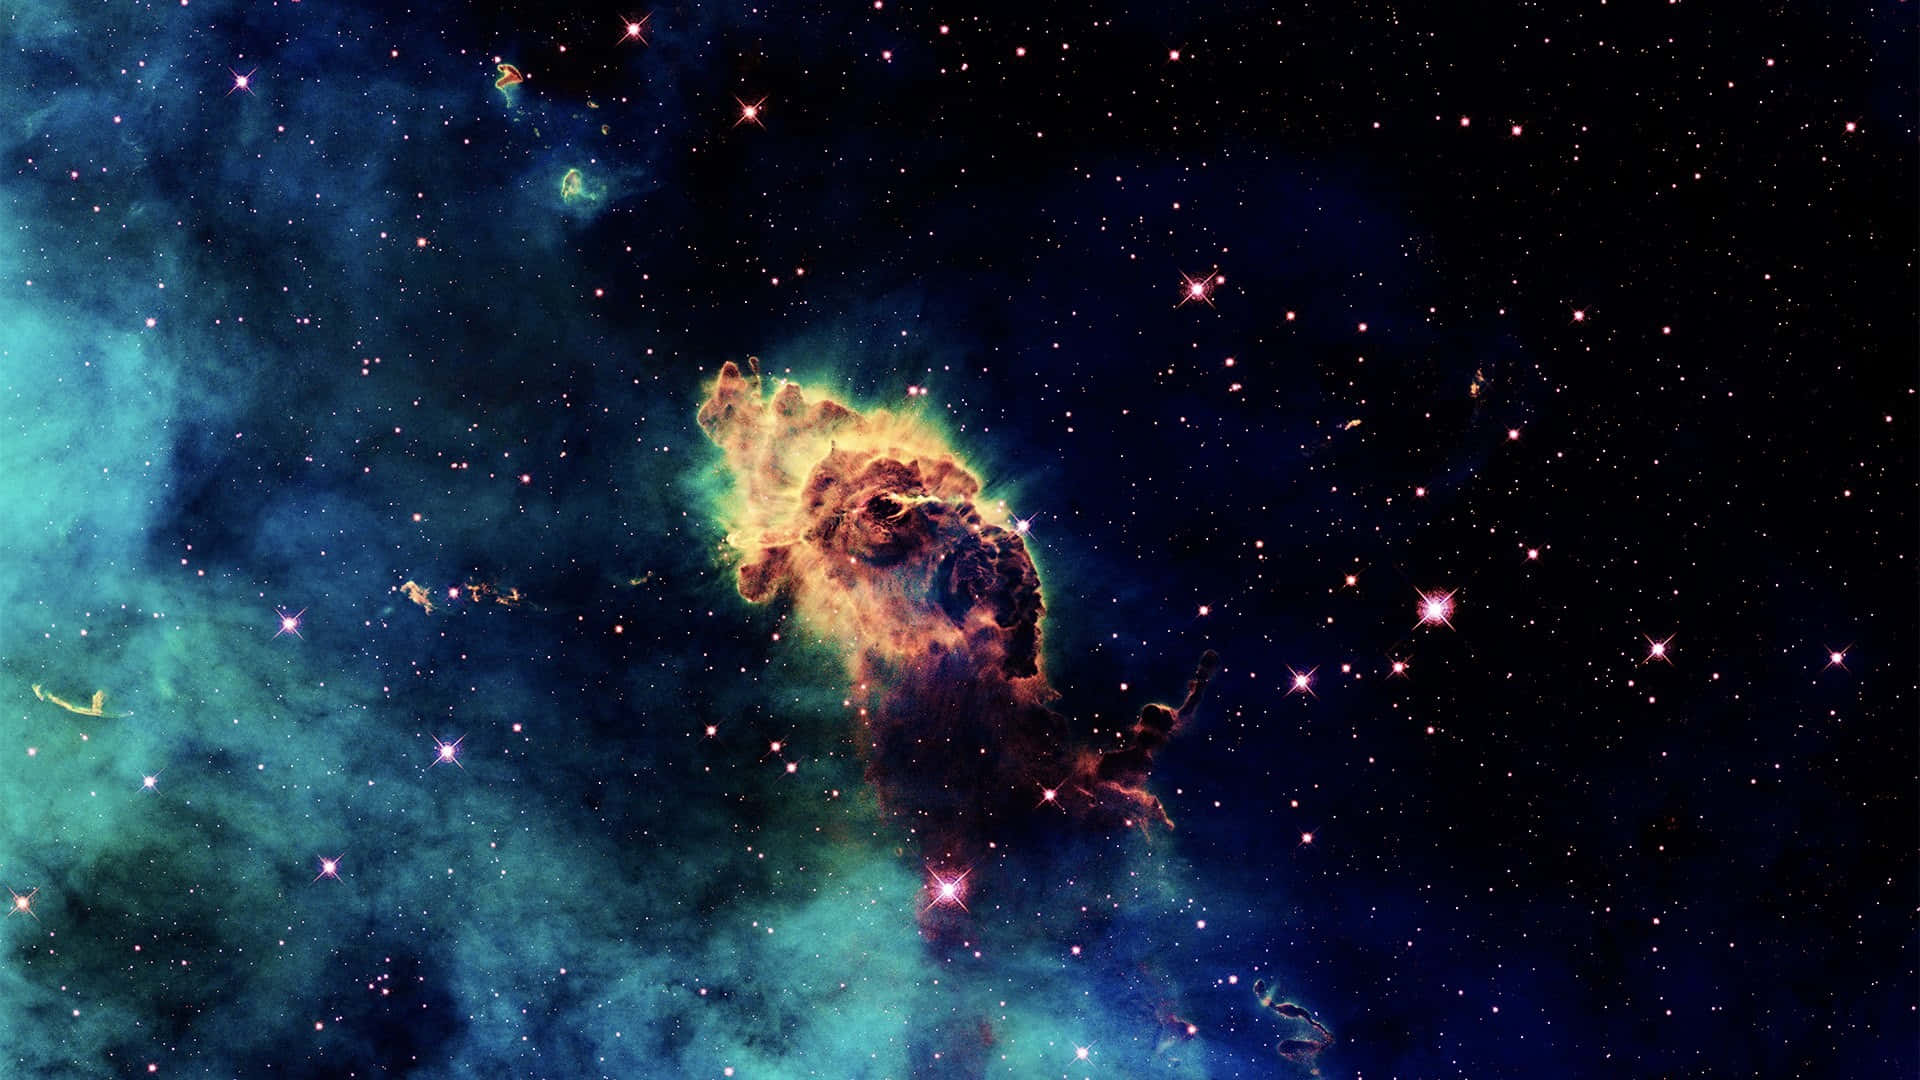 Galaxy Space Background&Carina Nebula